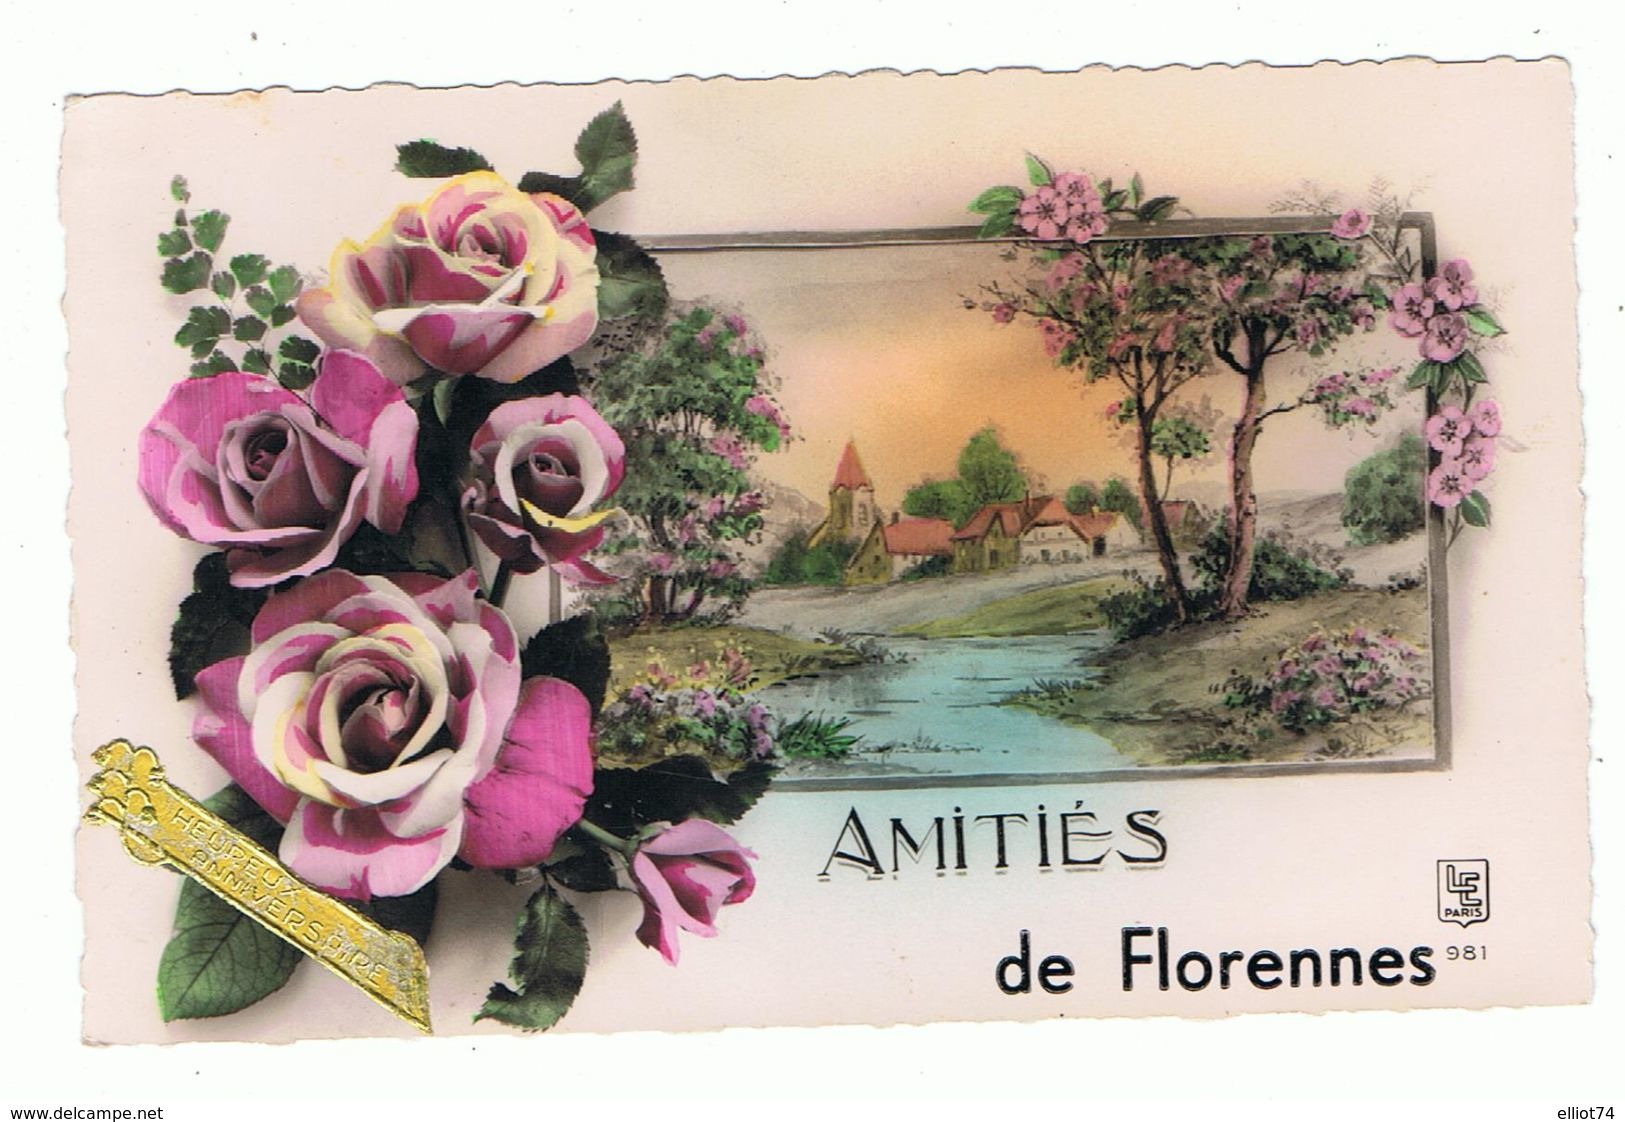 AMITIES DE FLORENNES - Florennes